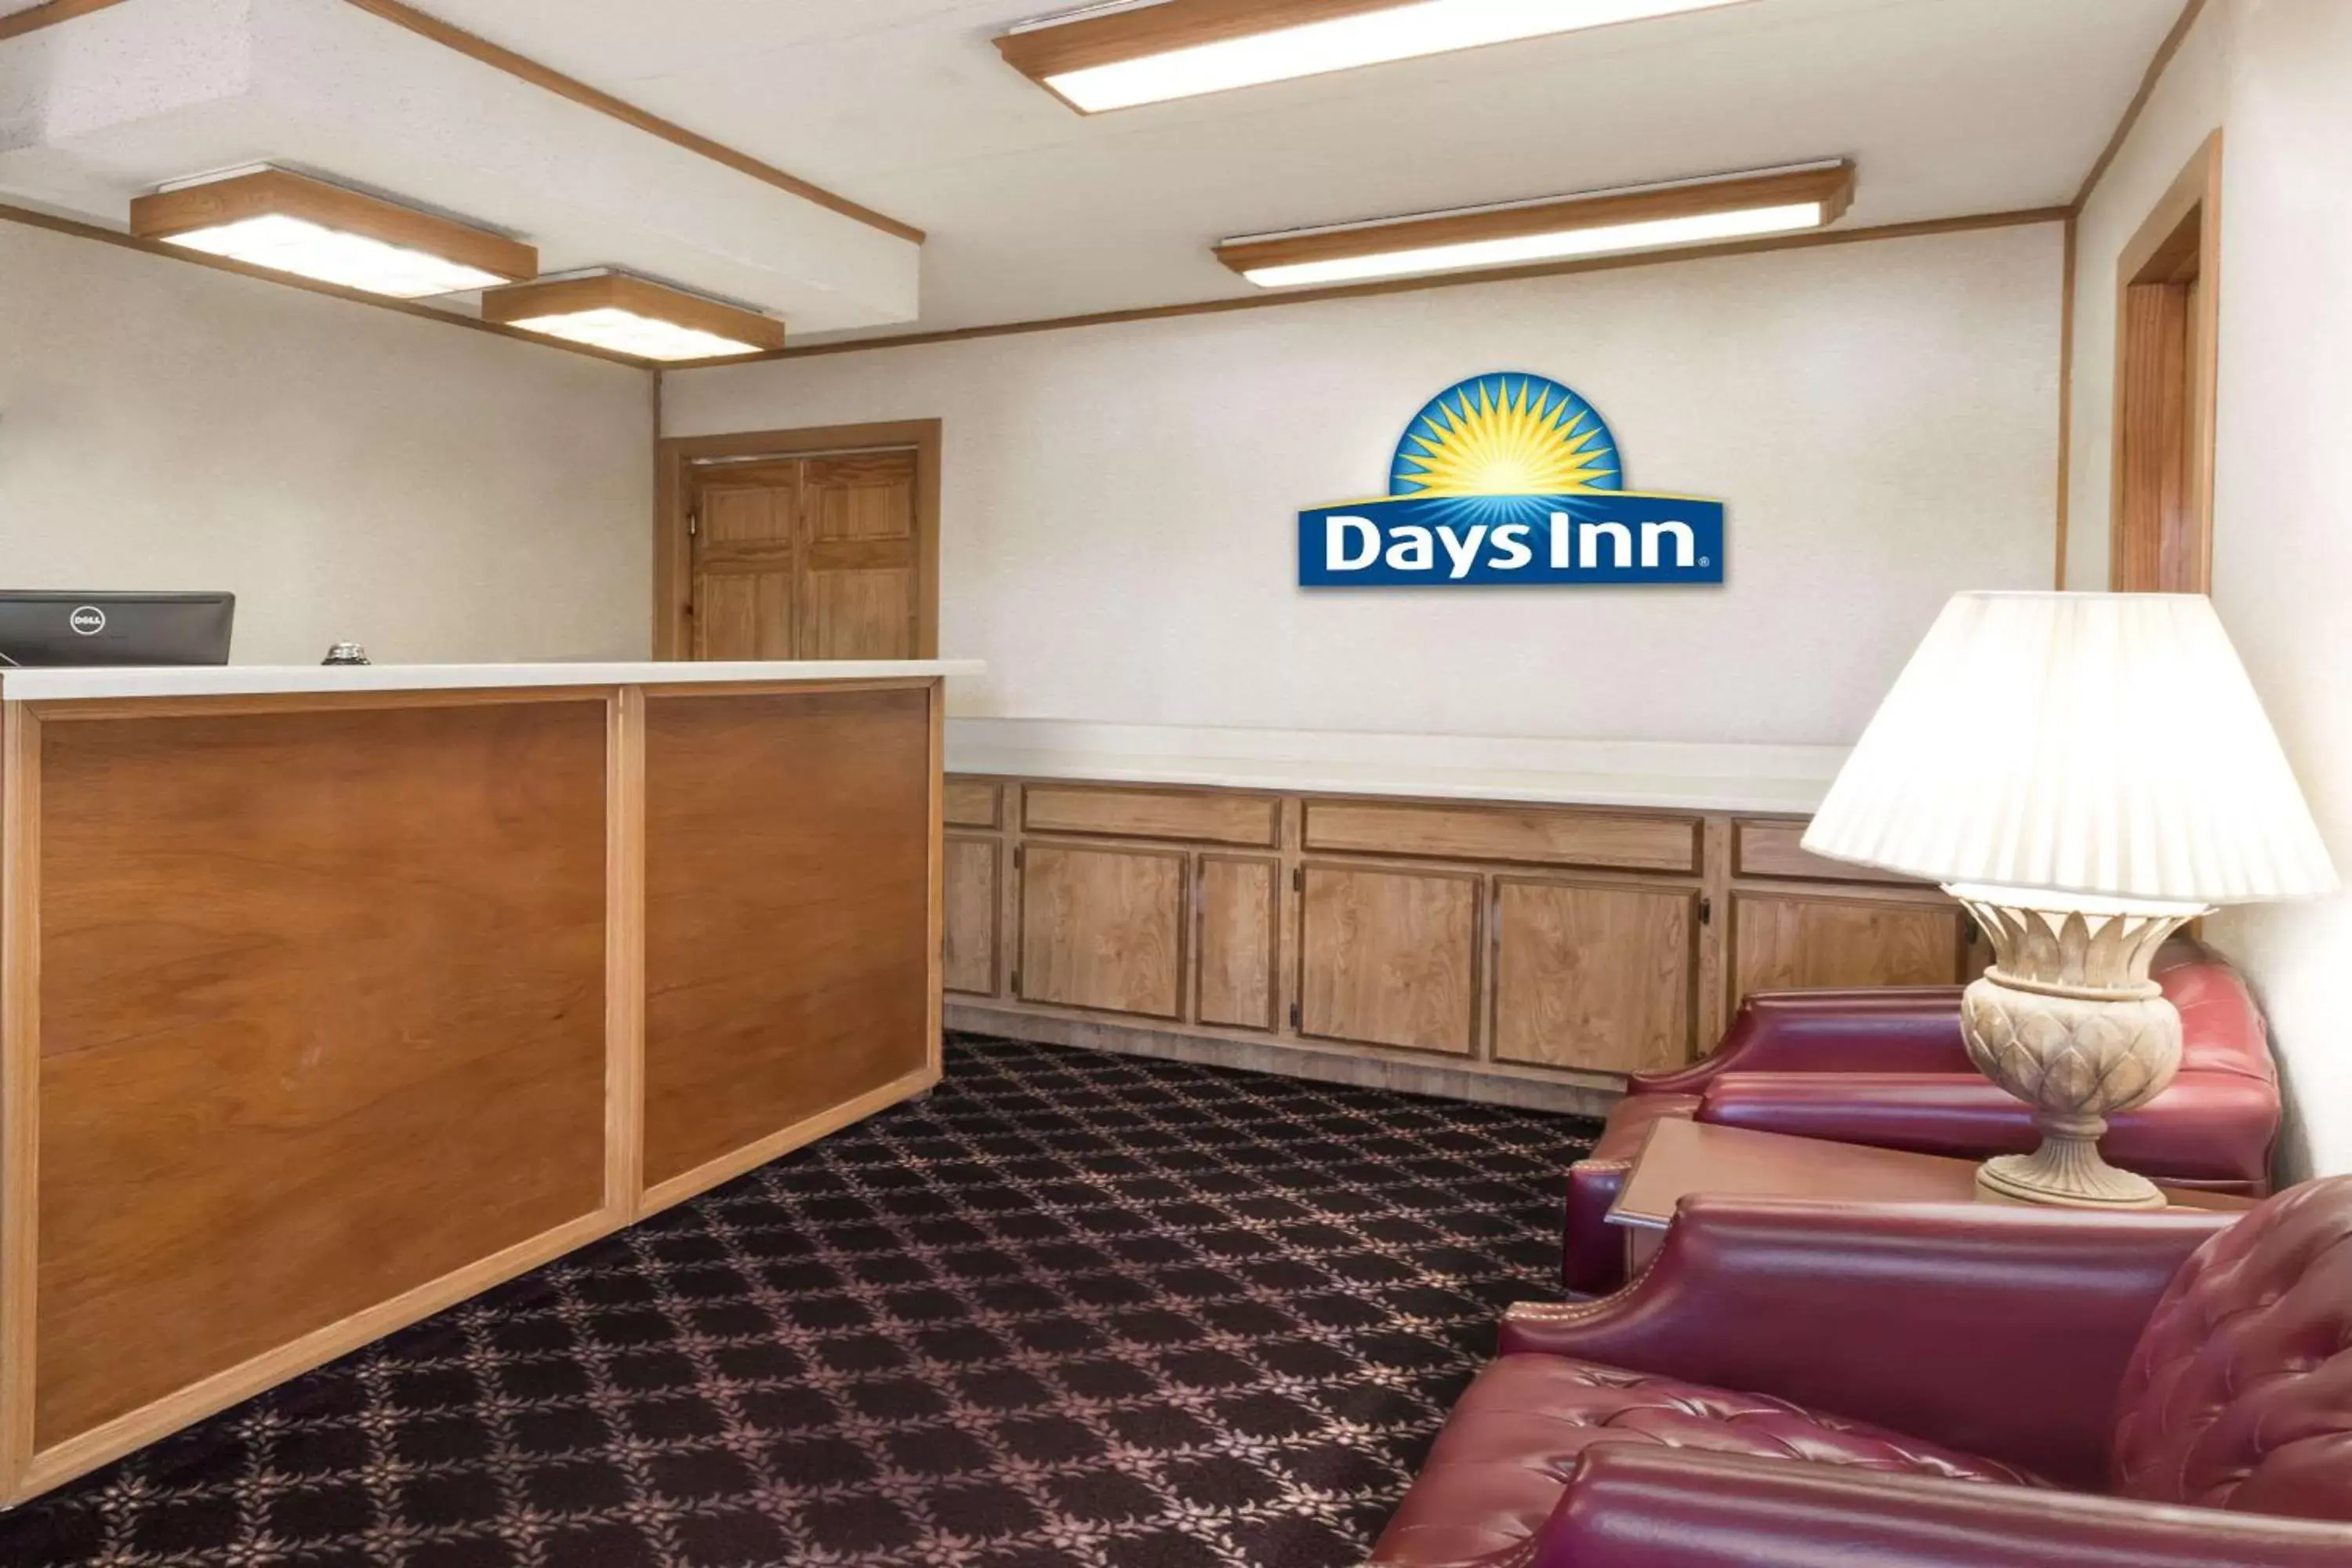 Lobby or reception, Lobby/Reception in Days Inn by Wyndham Plymouth